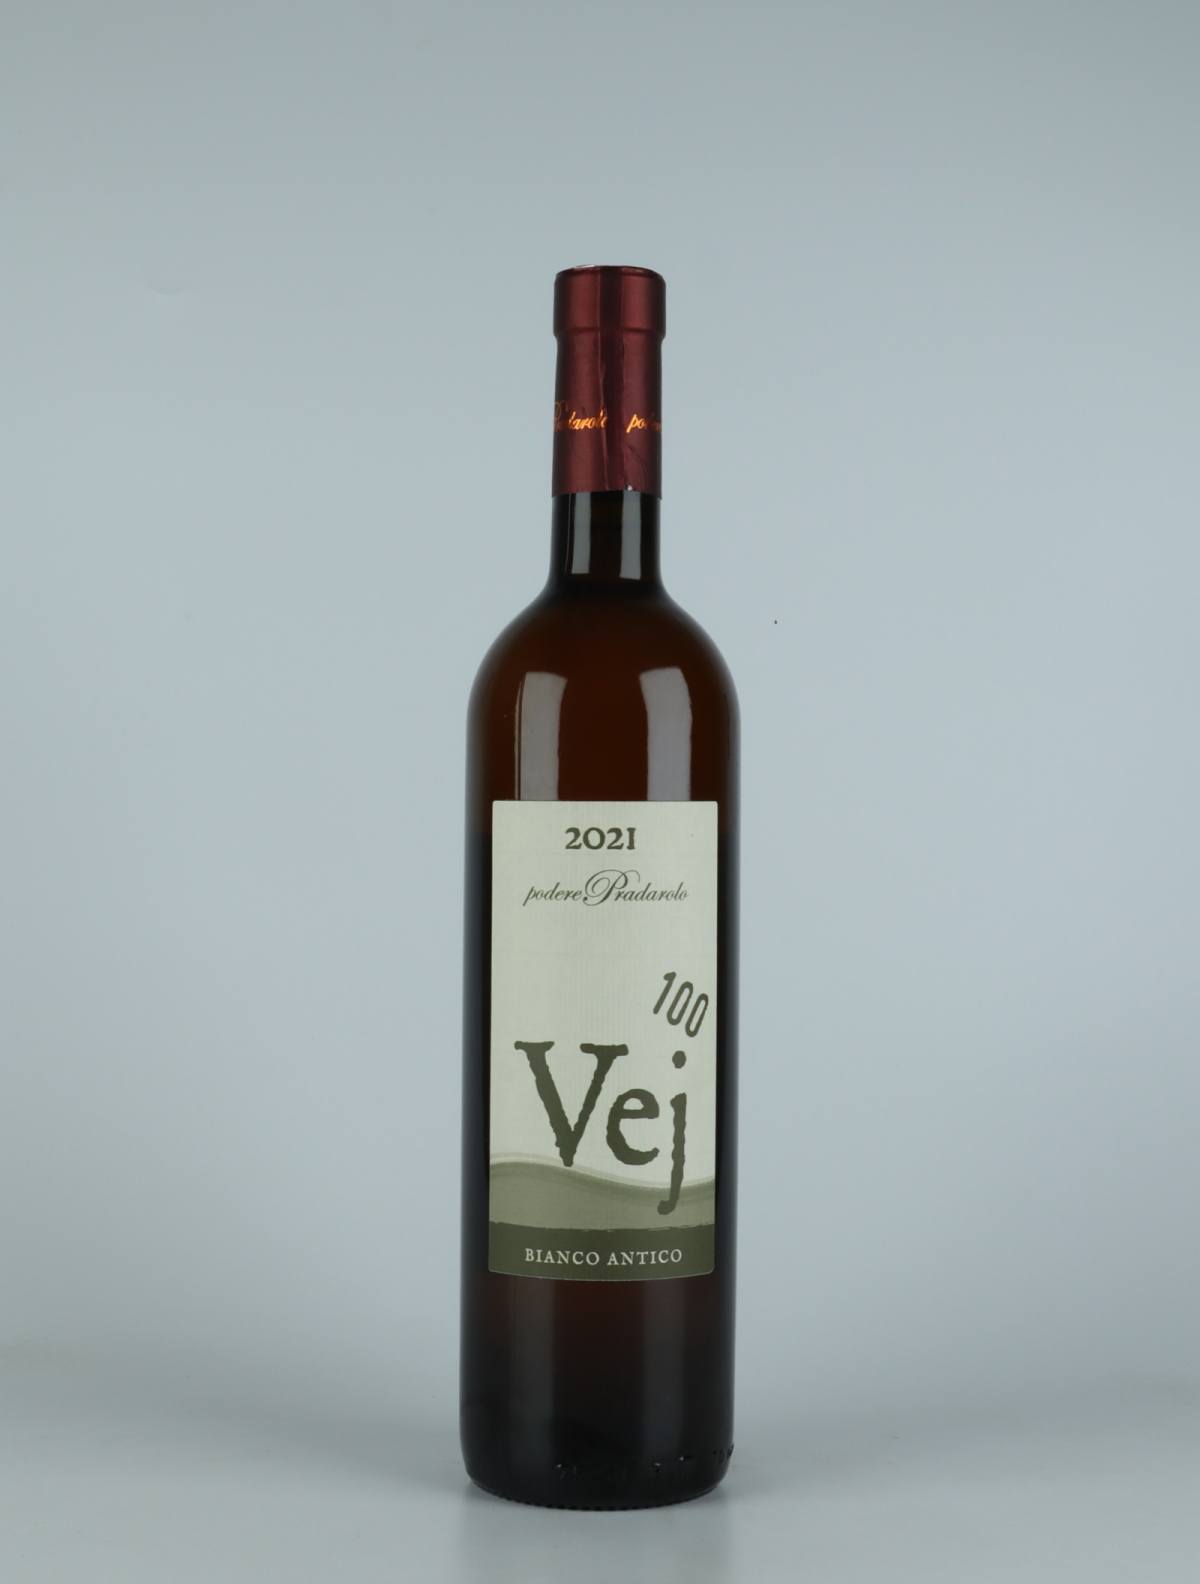 A bottle 2021 Vej 100 - Bianco Antico Orange wine from Podere Pradarolo, Emilia-Romagna in Italy